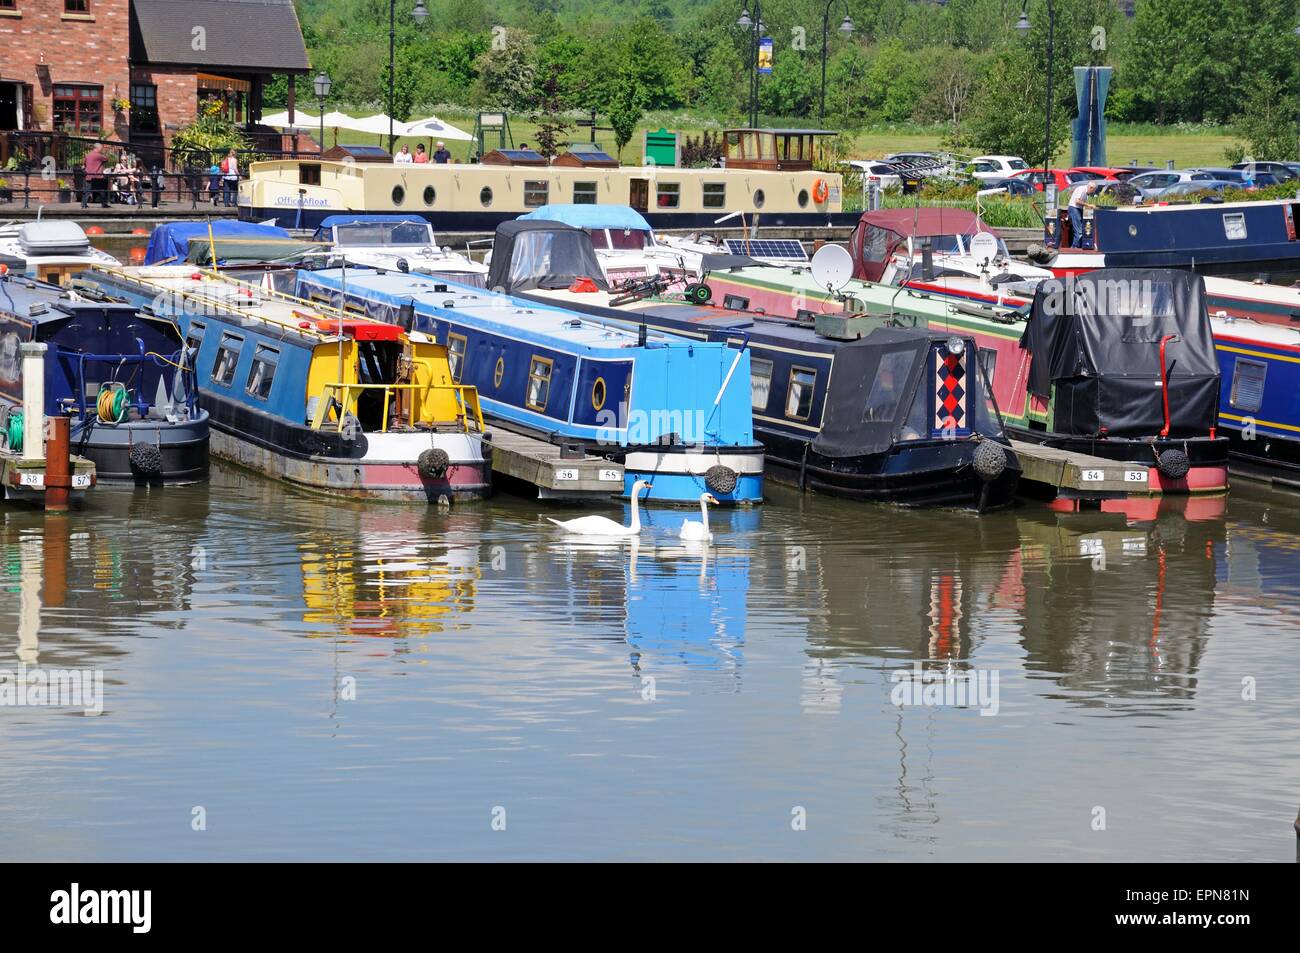 Narrowboats sur leurs amarres dans le bassin du canal avec un bar à l'arrière, Barton Marina, Barton-under-Needwood, Staffordshire, Royaume-Uni Banque D'Images